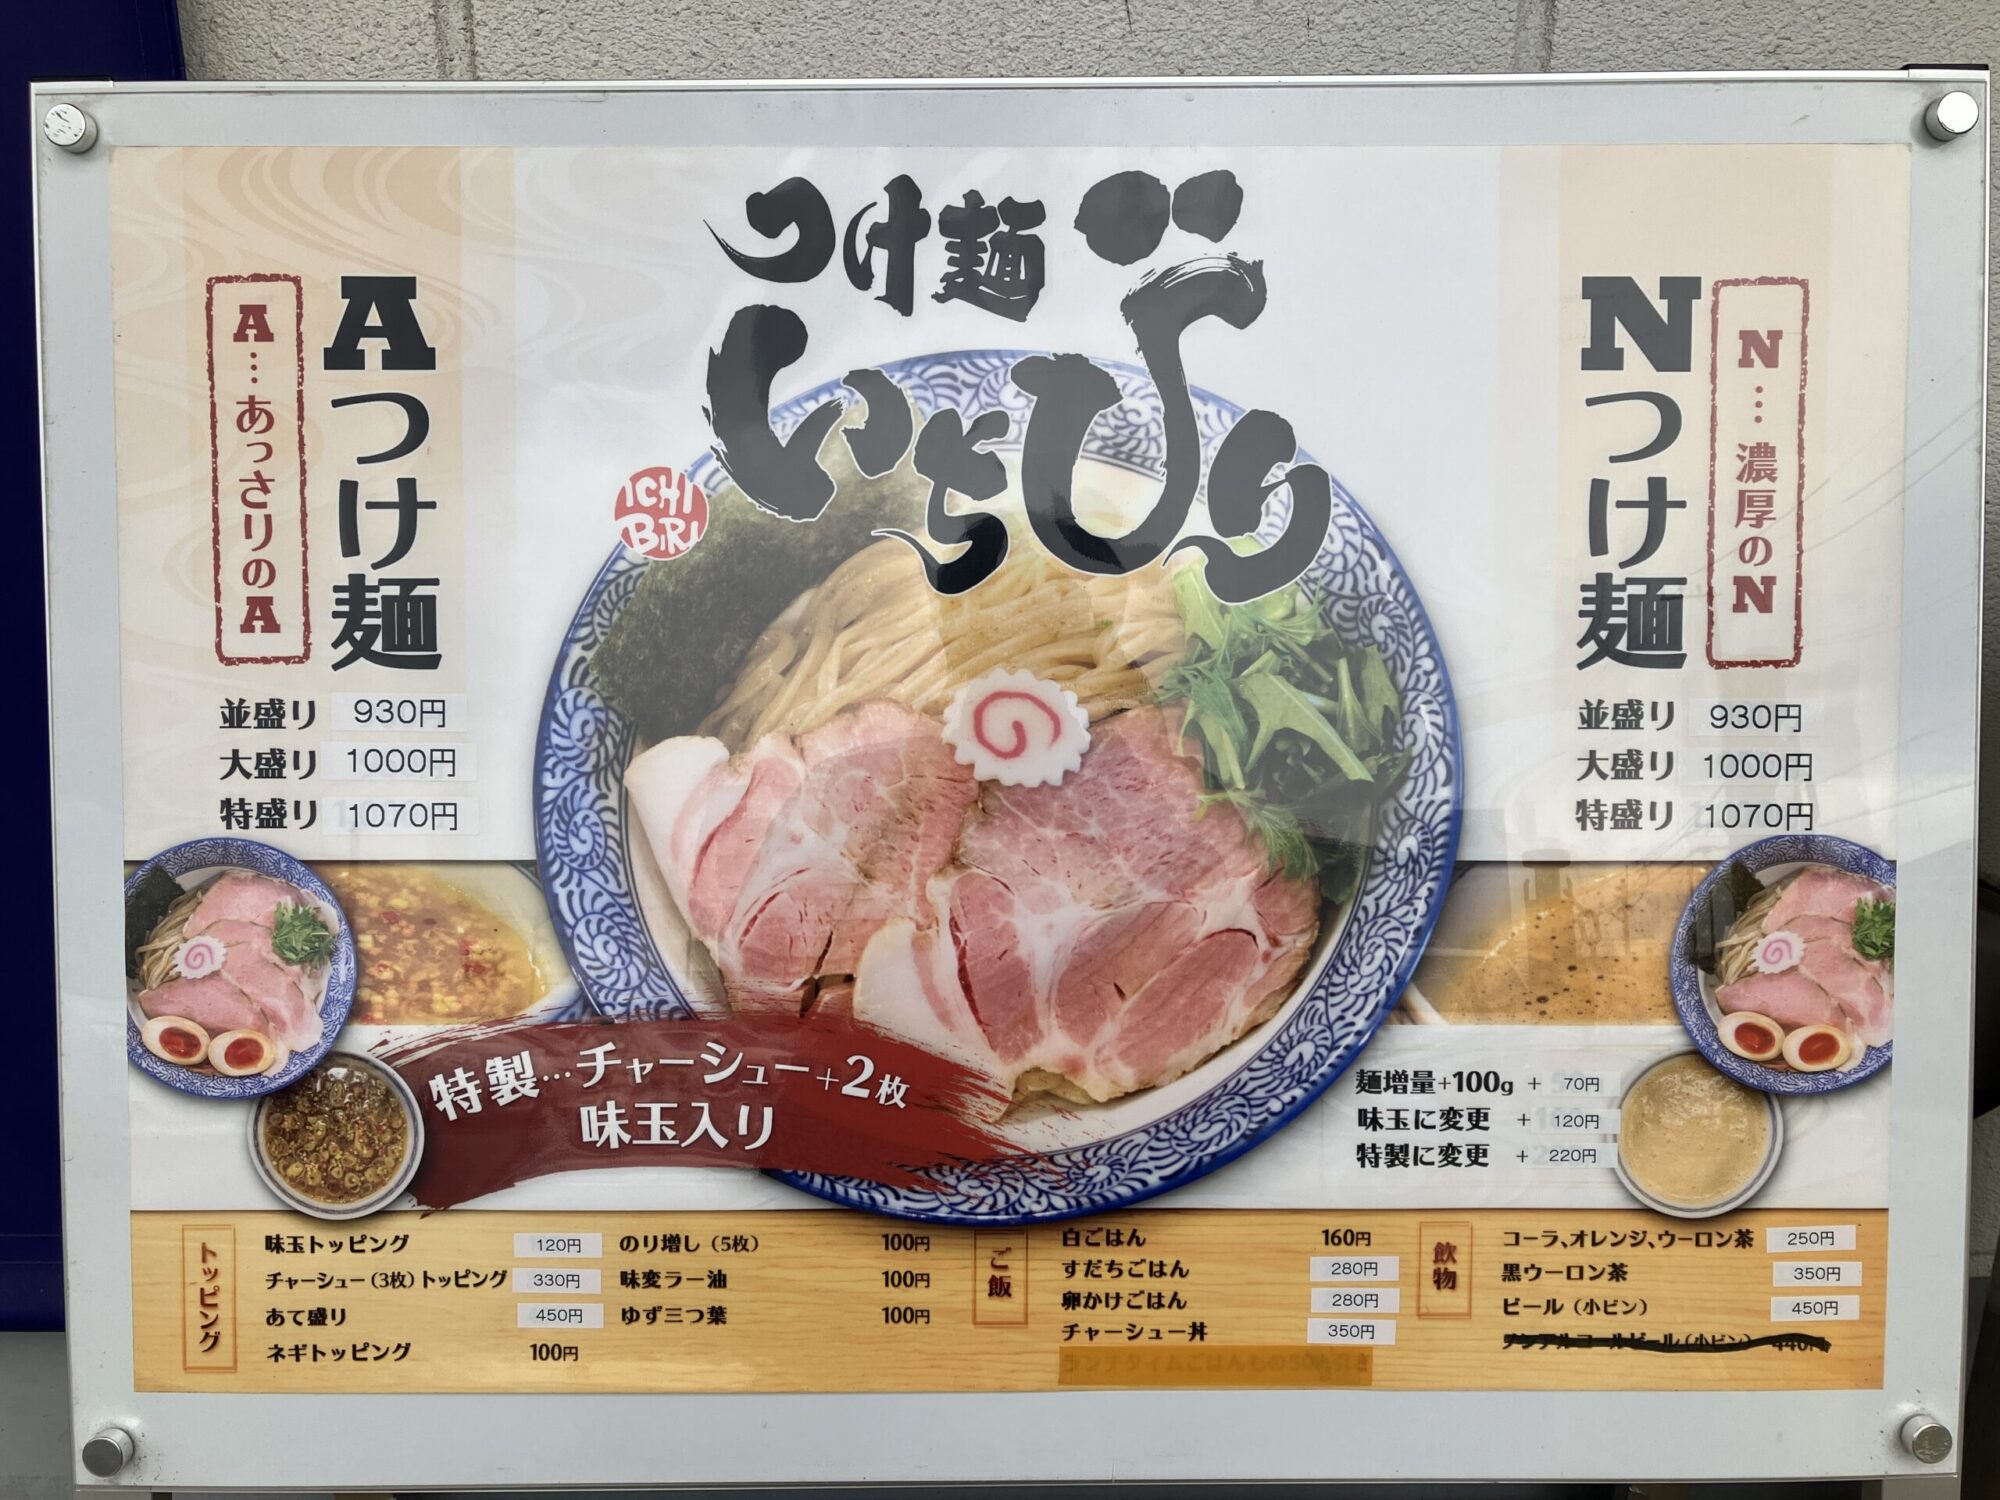 橿原市「つけ麺いちびり」メニュー写真